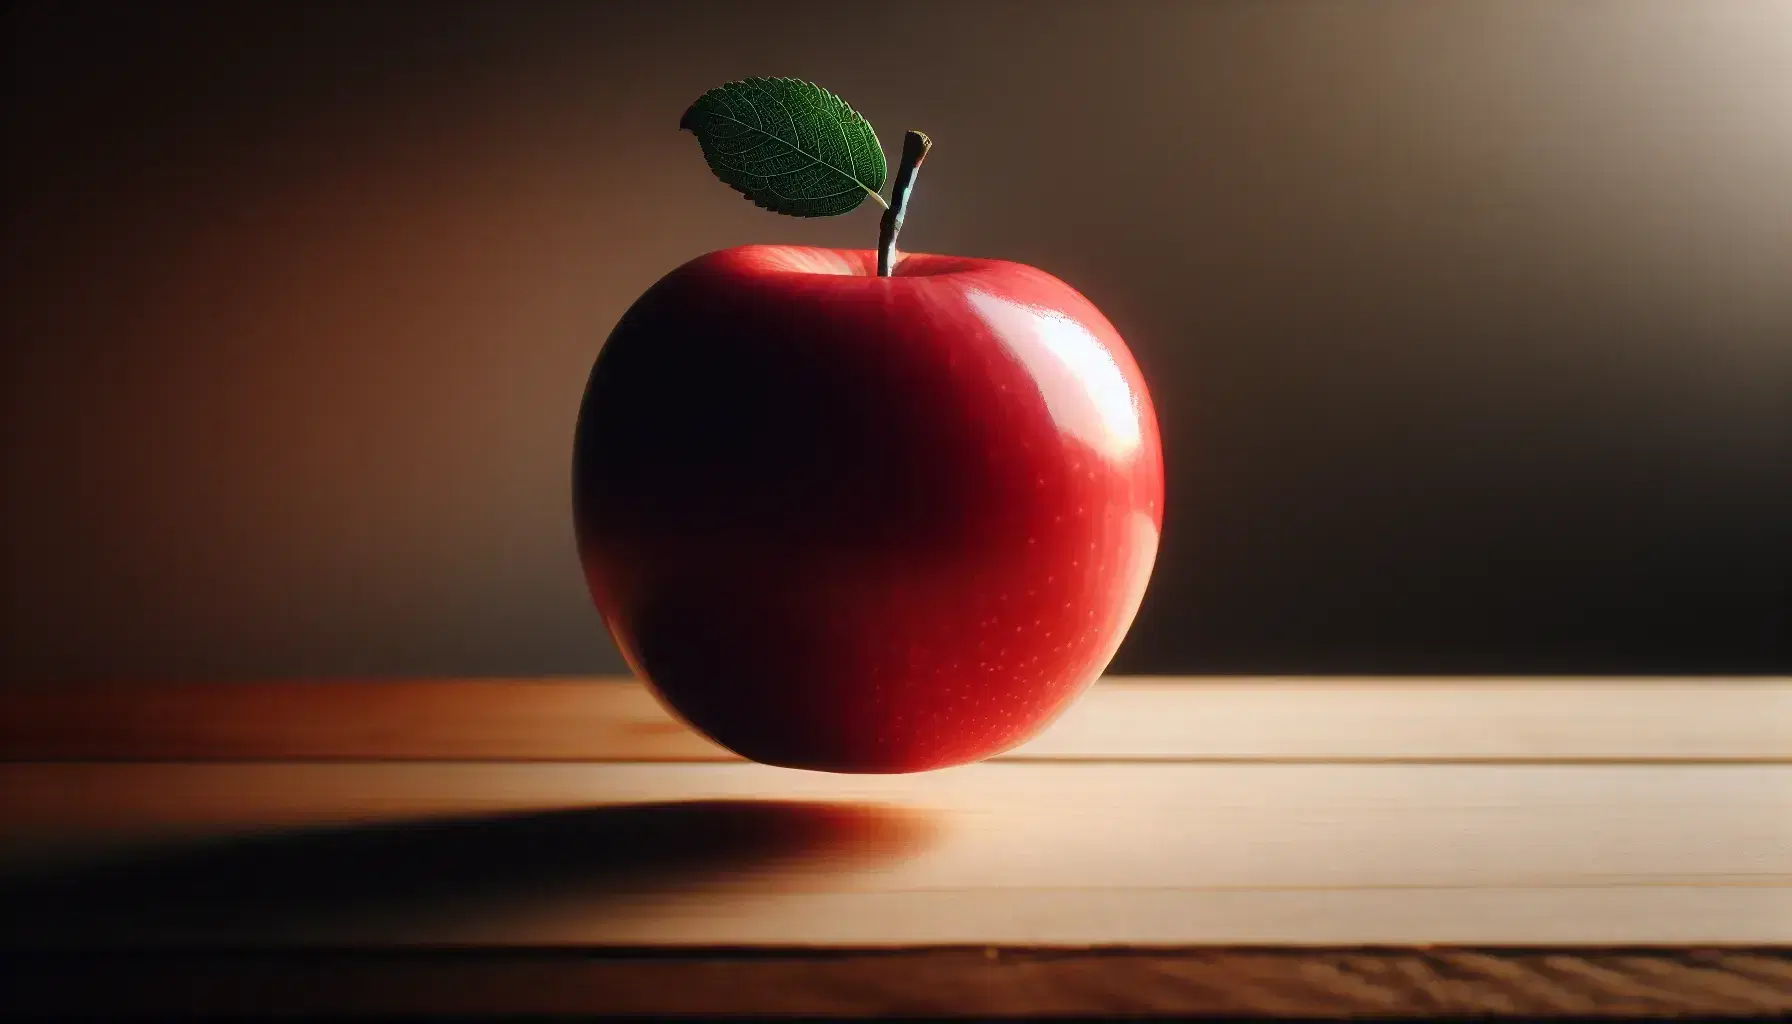 Manzana roja brillante con hoja verde suspendida en el aire a punto de caer sobre una superficie de madera clara, reflejando suavemente la luz ambiental.